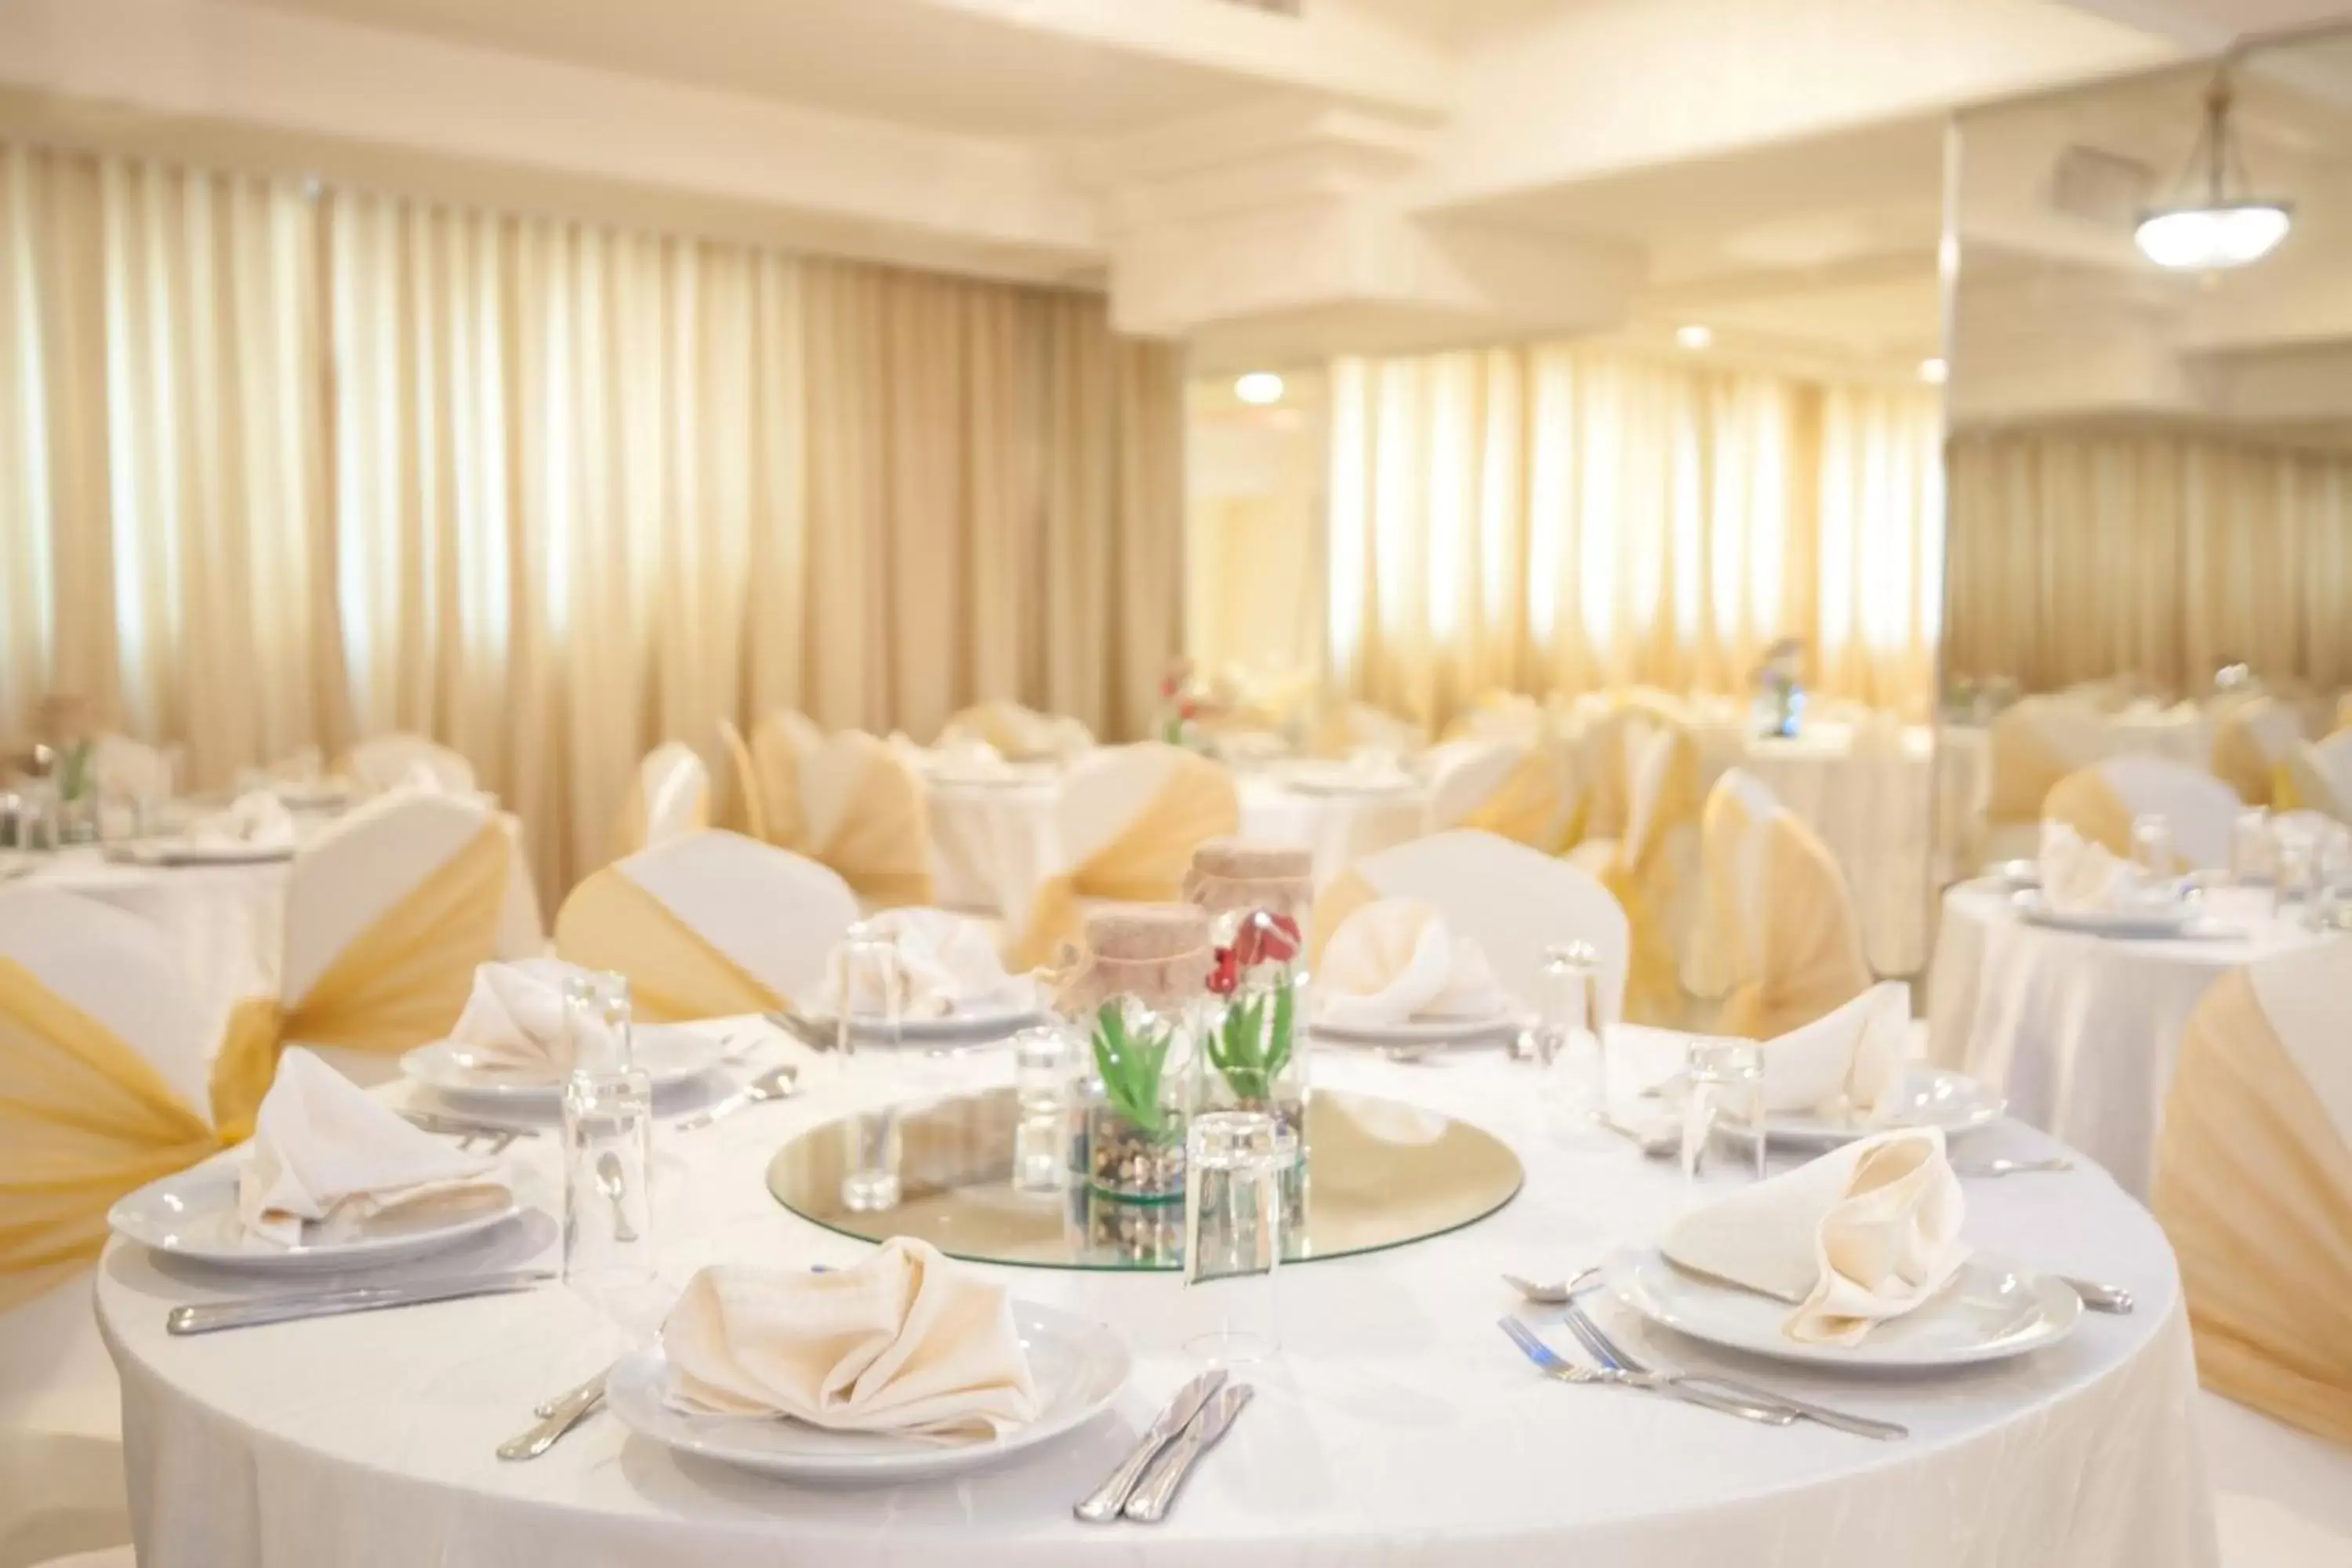 Banquet/Function facilities, Banquet Facilities in Toledo Amman Hotel